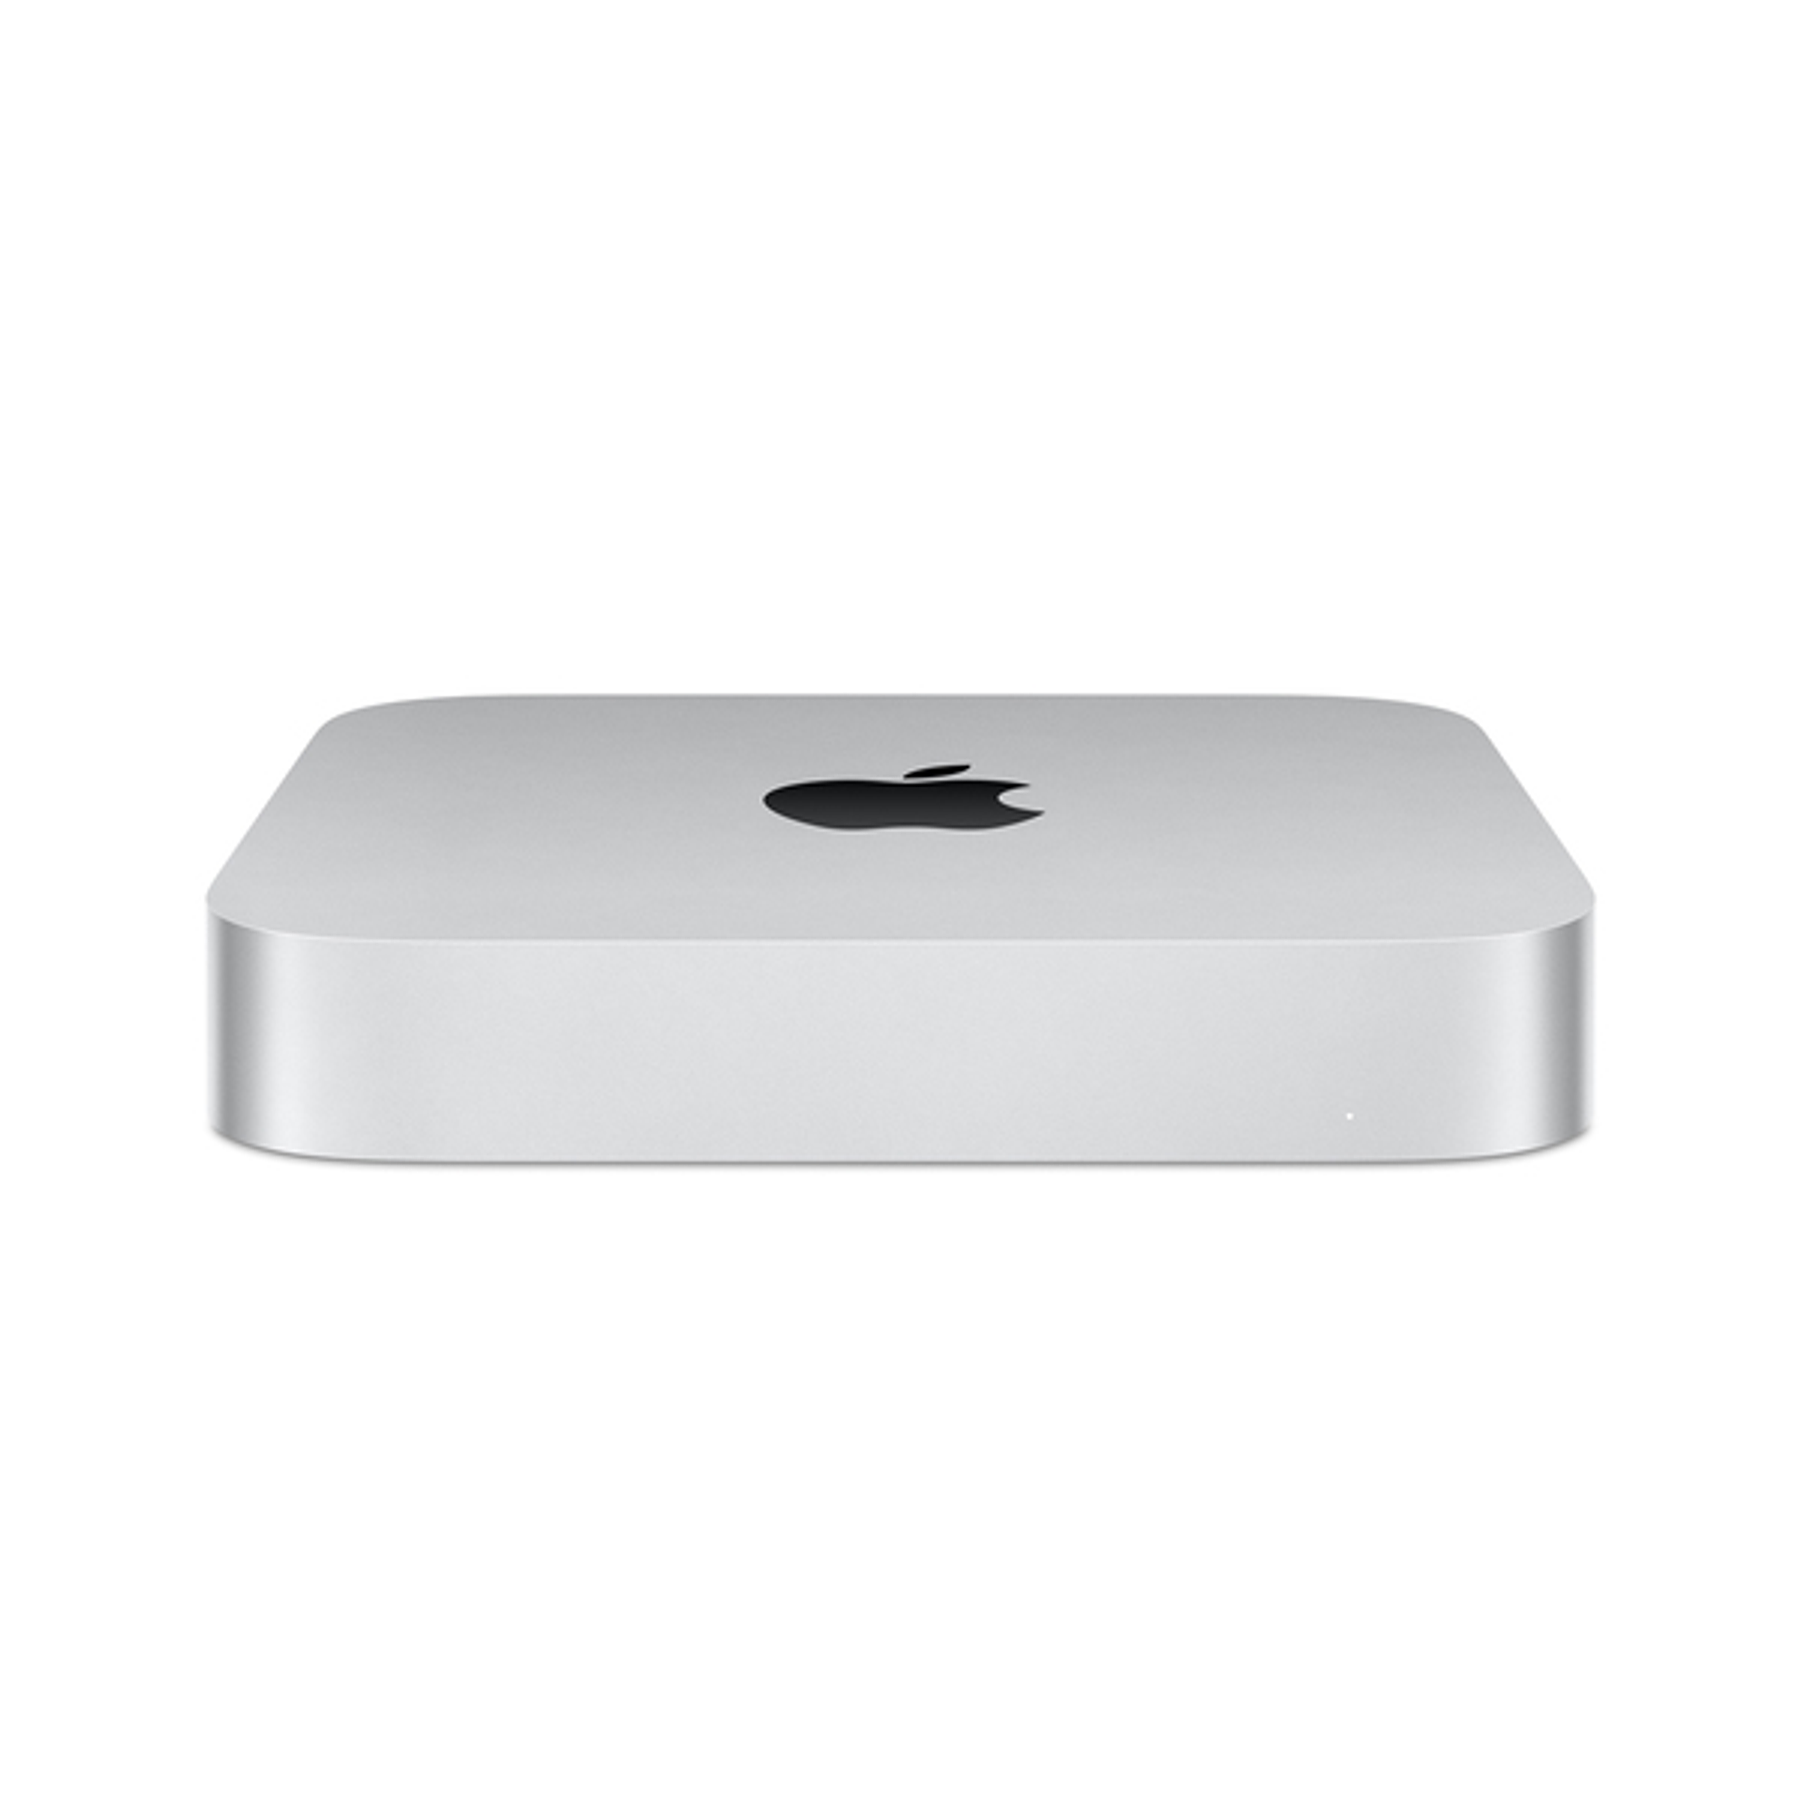 Apple Mac Mini  [Cotización a Pedido]